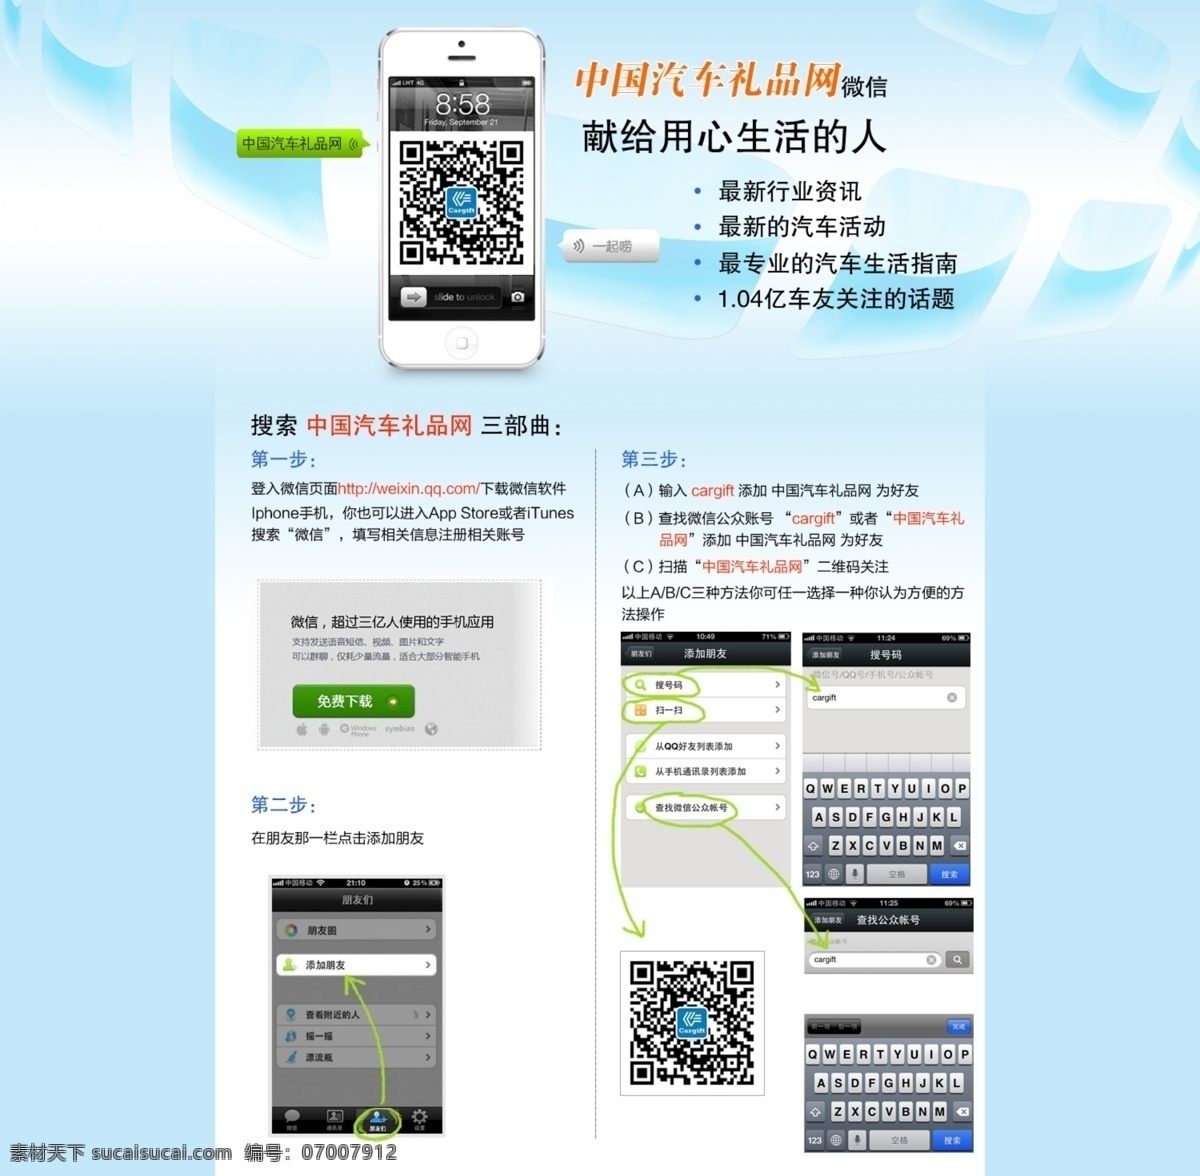 dm宣传单 广告 广告设计模板 手机 手机微信 微信 源文件 微 信 单 页 模板下载 微信单页 微信使用 app